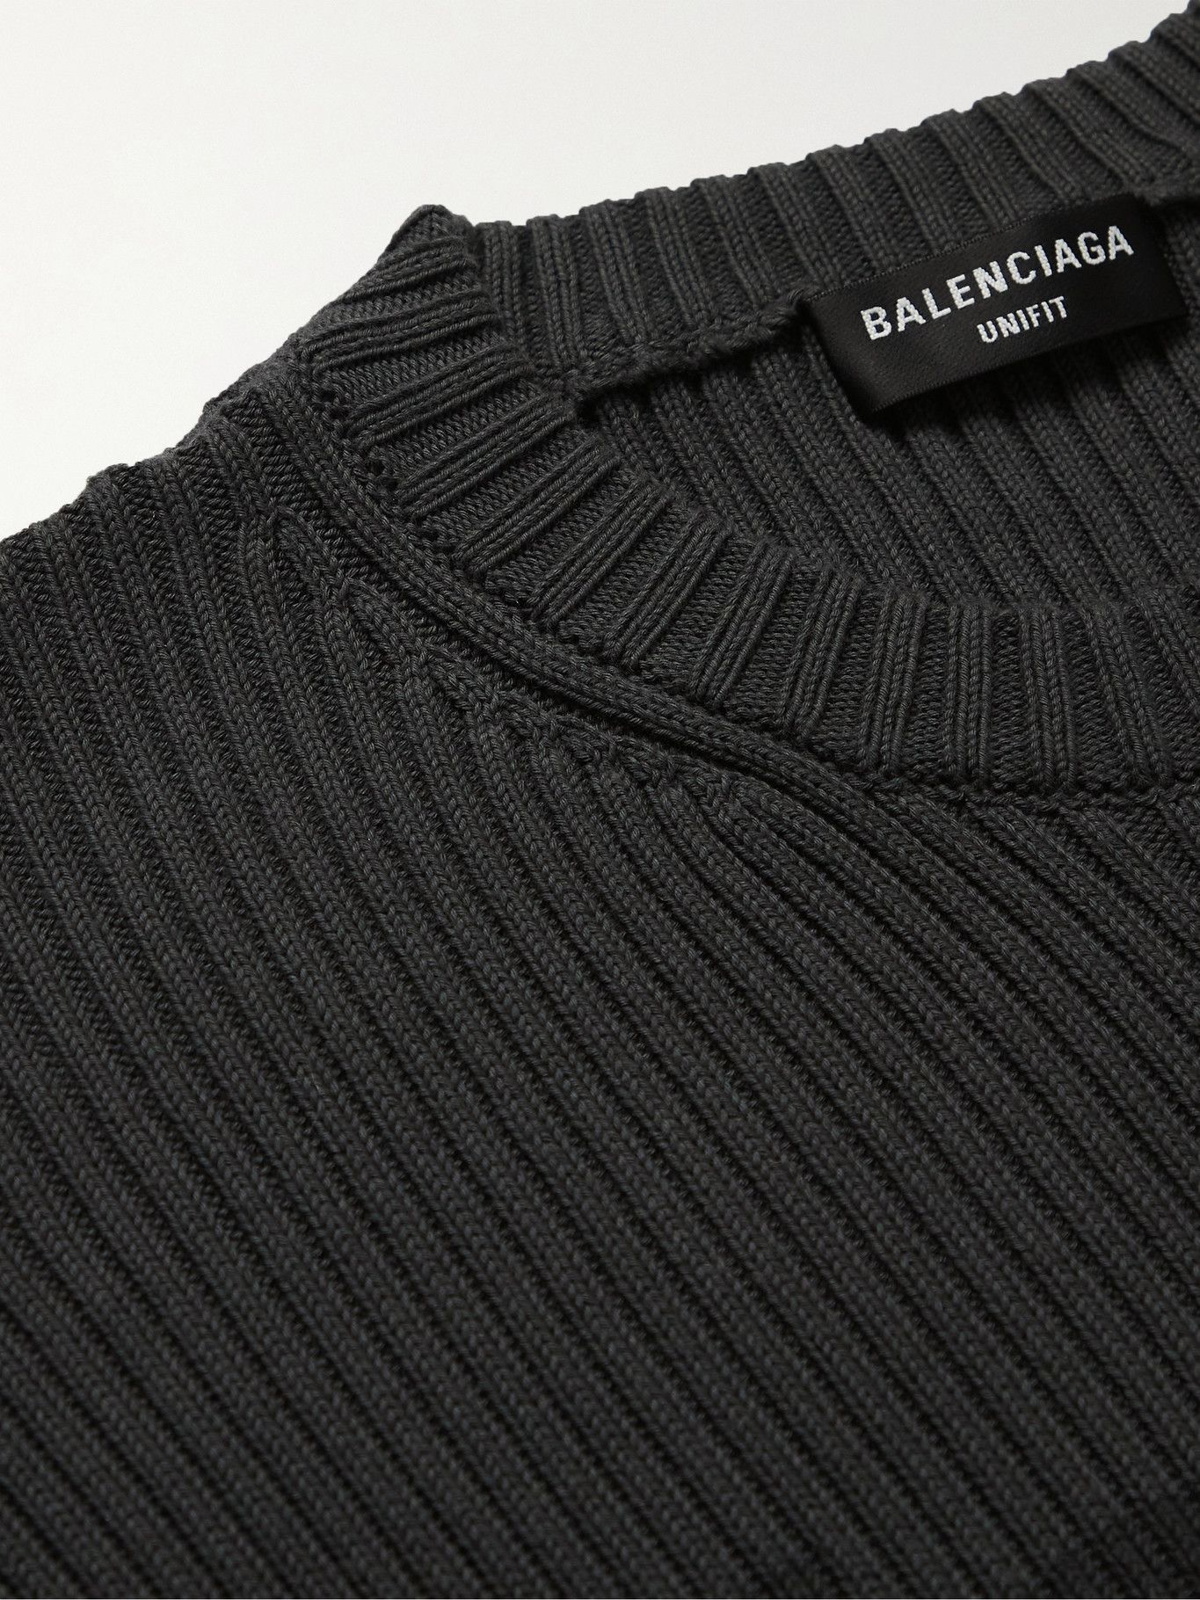 multi-logo print ribbed jumper, Balenciaga